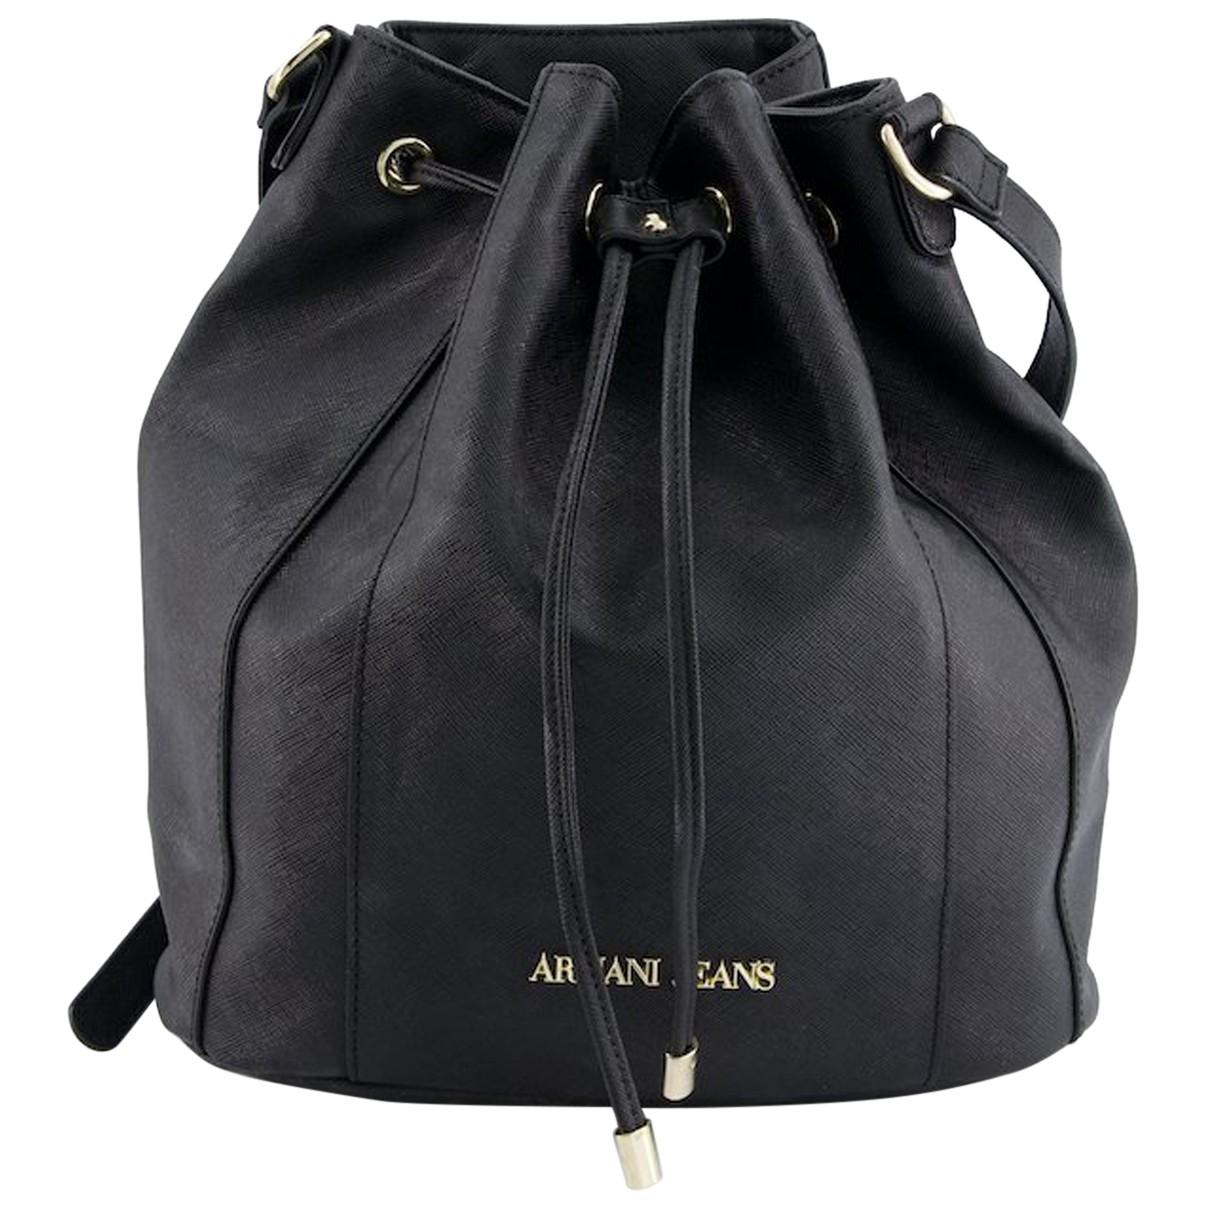 Leather handbag Armani Jeans